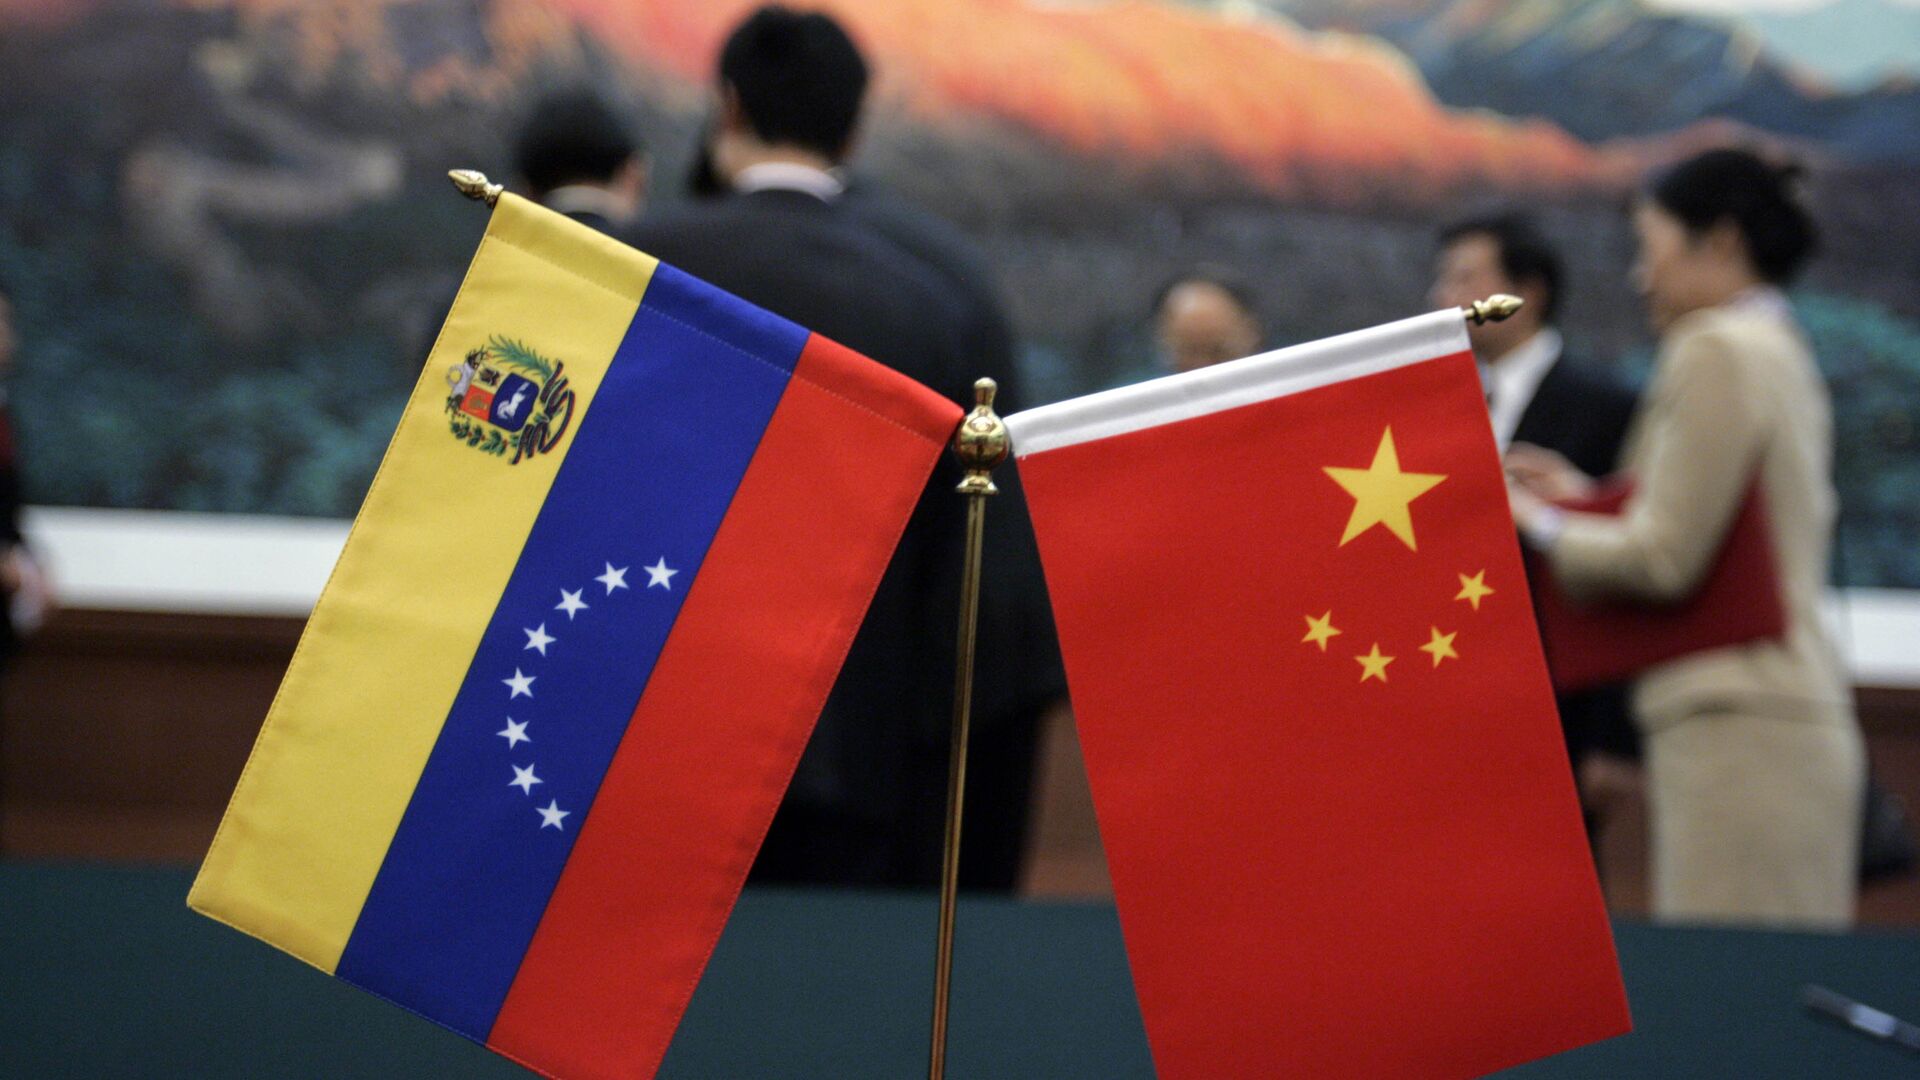 Banderas de Venezuela y China - Sputnik Mundo, 1920, 10.09.2021